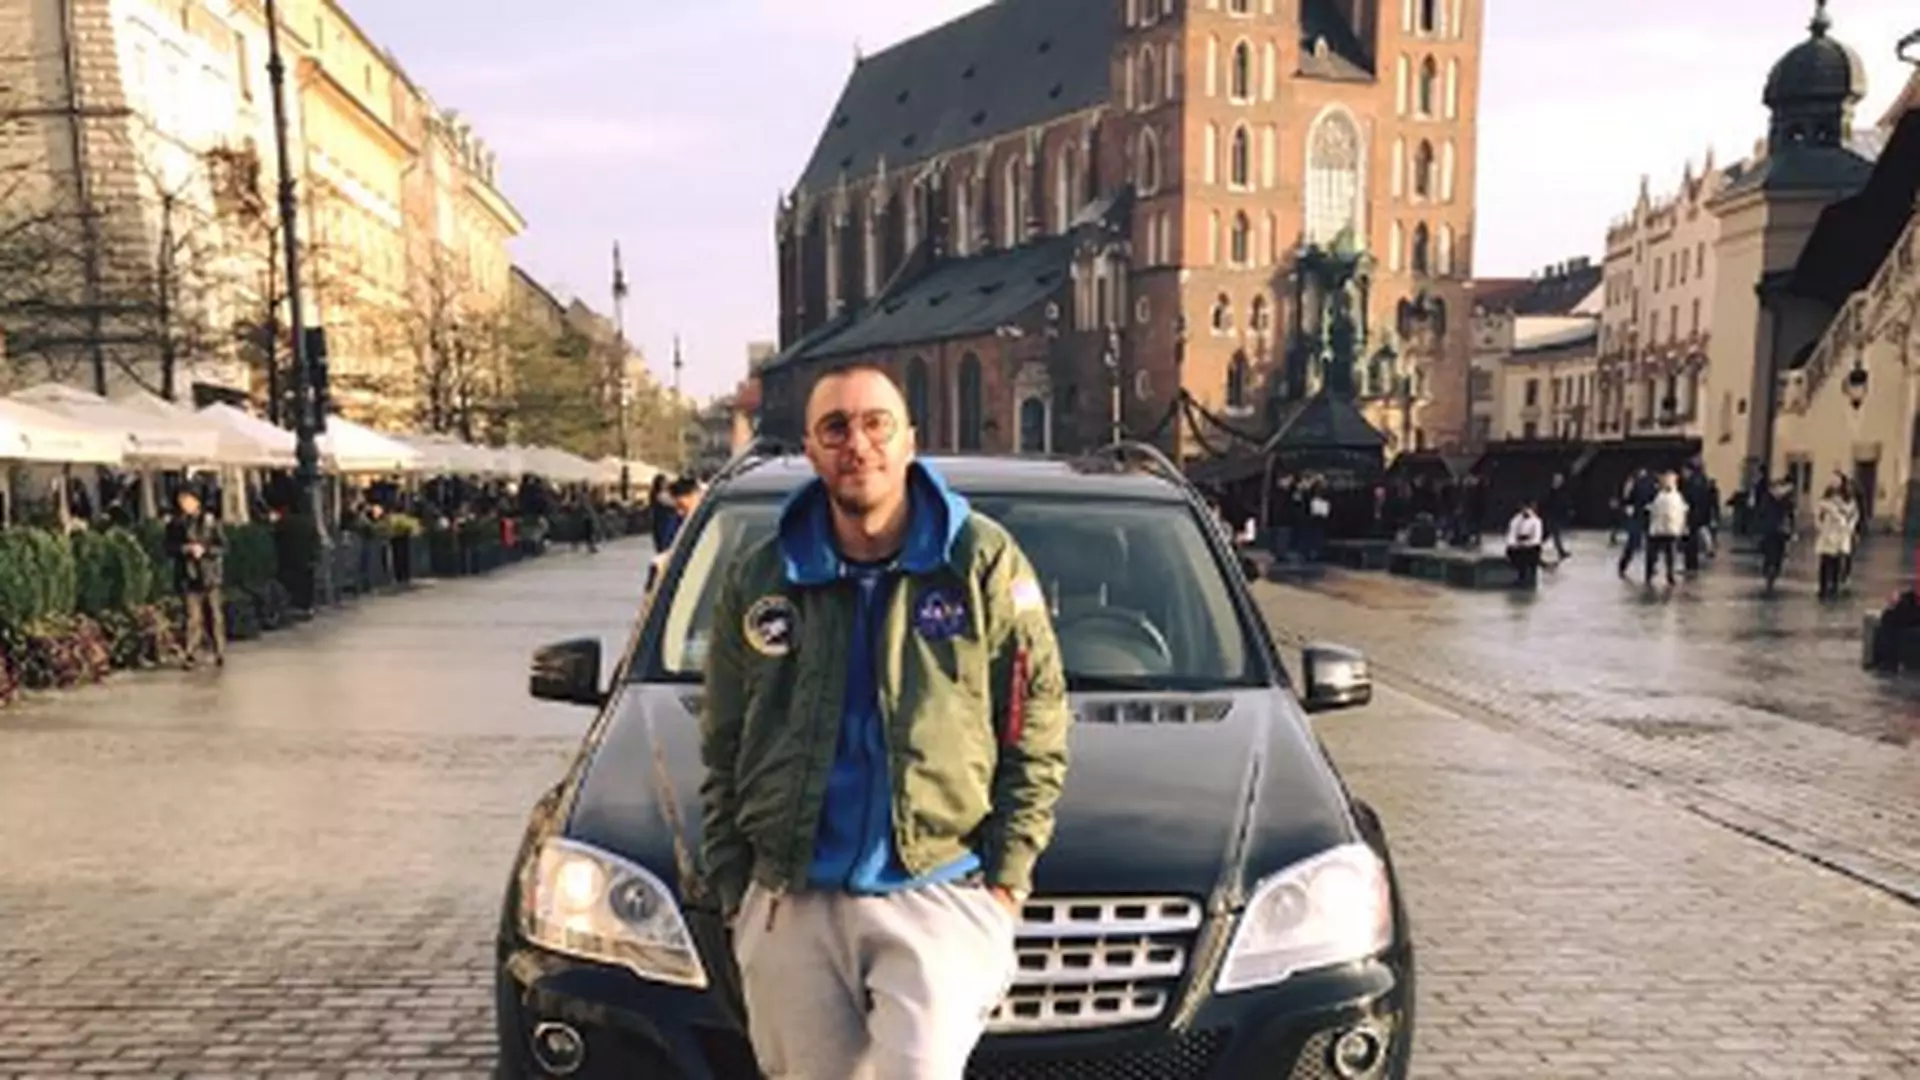 Rozbójnik Alibaba wjechał swoim autem na krakowski rynek. Miał być fejm, a wyszło bardzo słabo